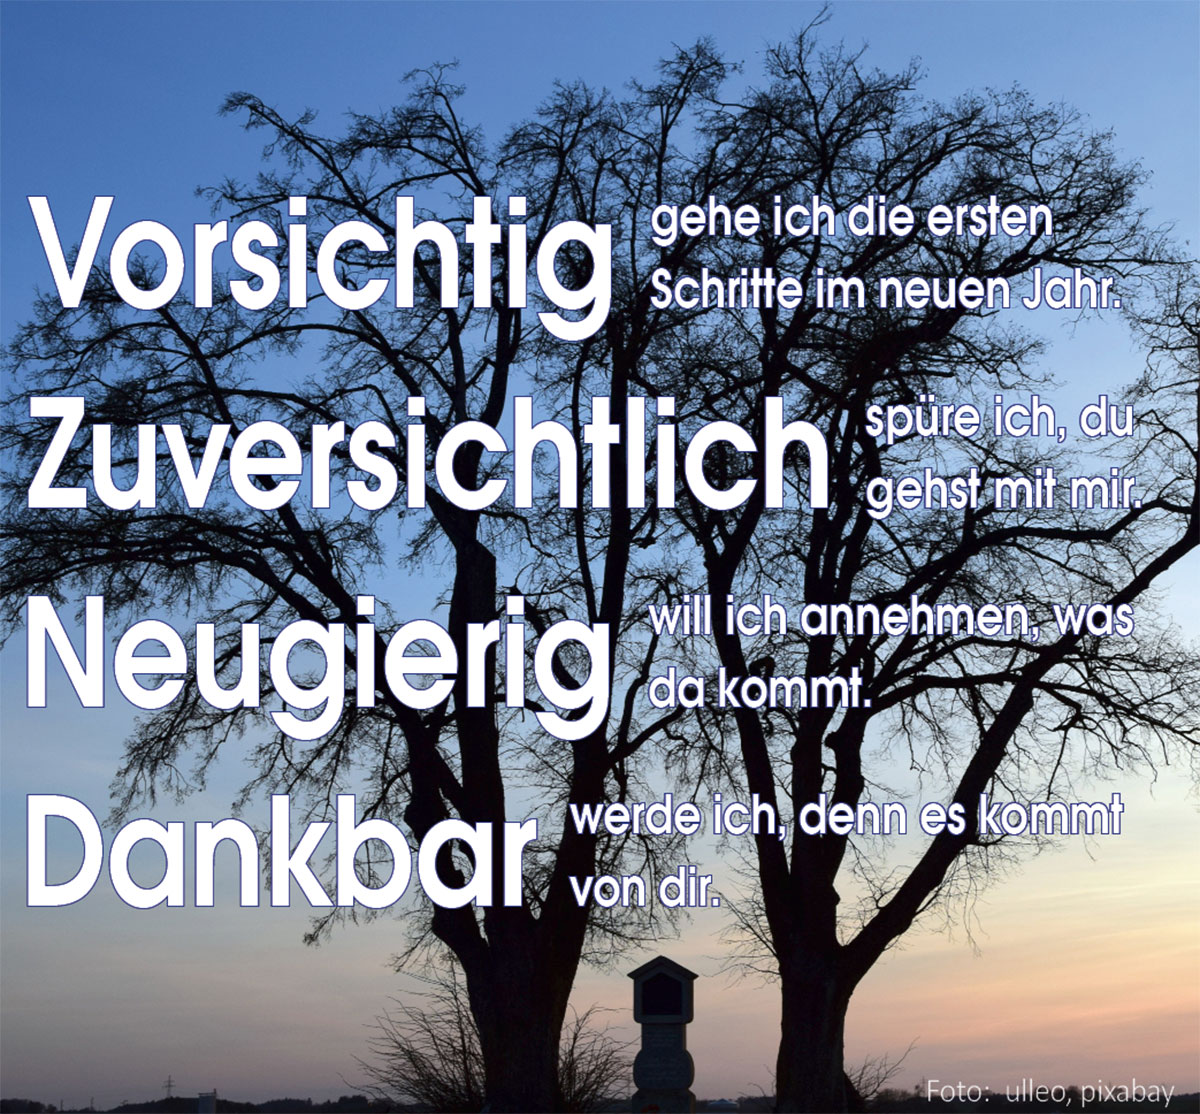 Bäume und Wegkreuz (Foto: ulleo, pixabay)